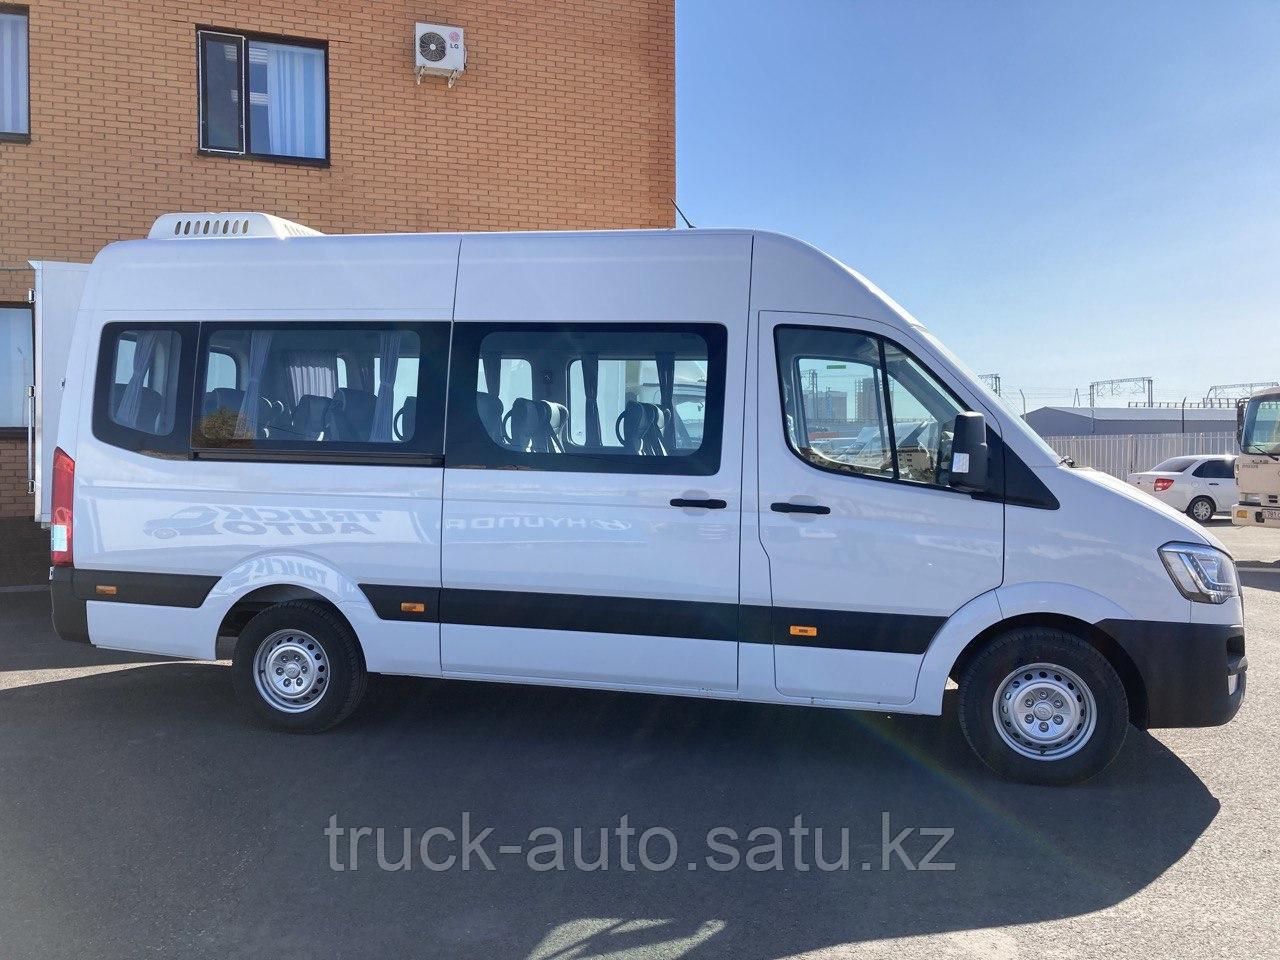 Автобус Hyundai H350 (id 98134897), купить в Казахстане, цена на Satu.kz